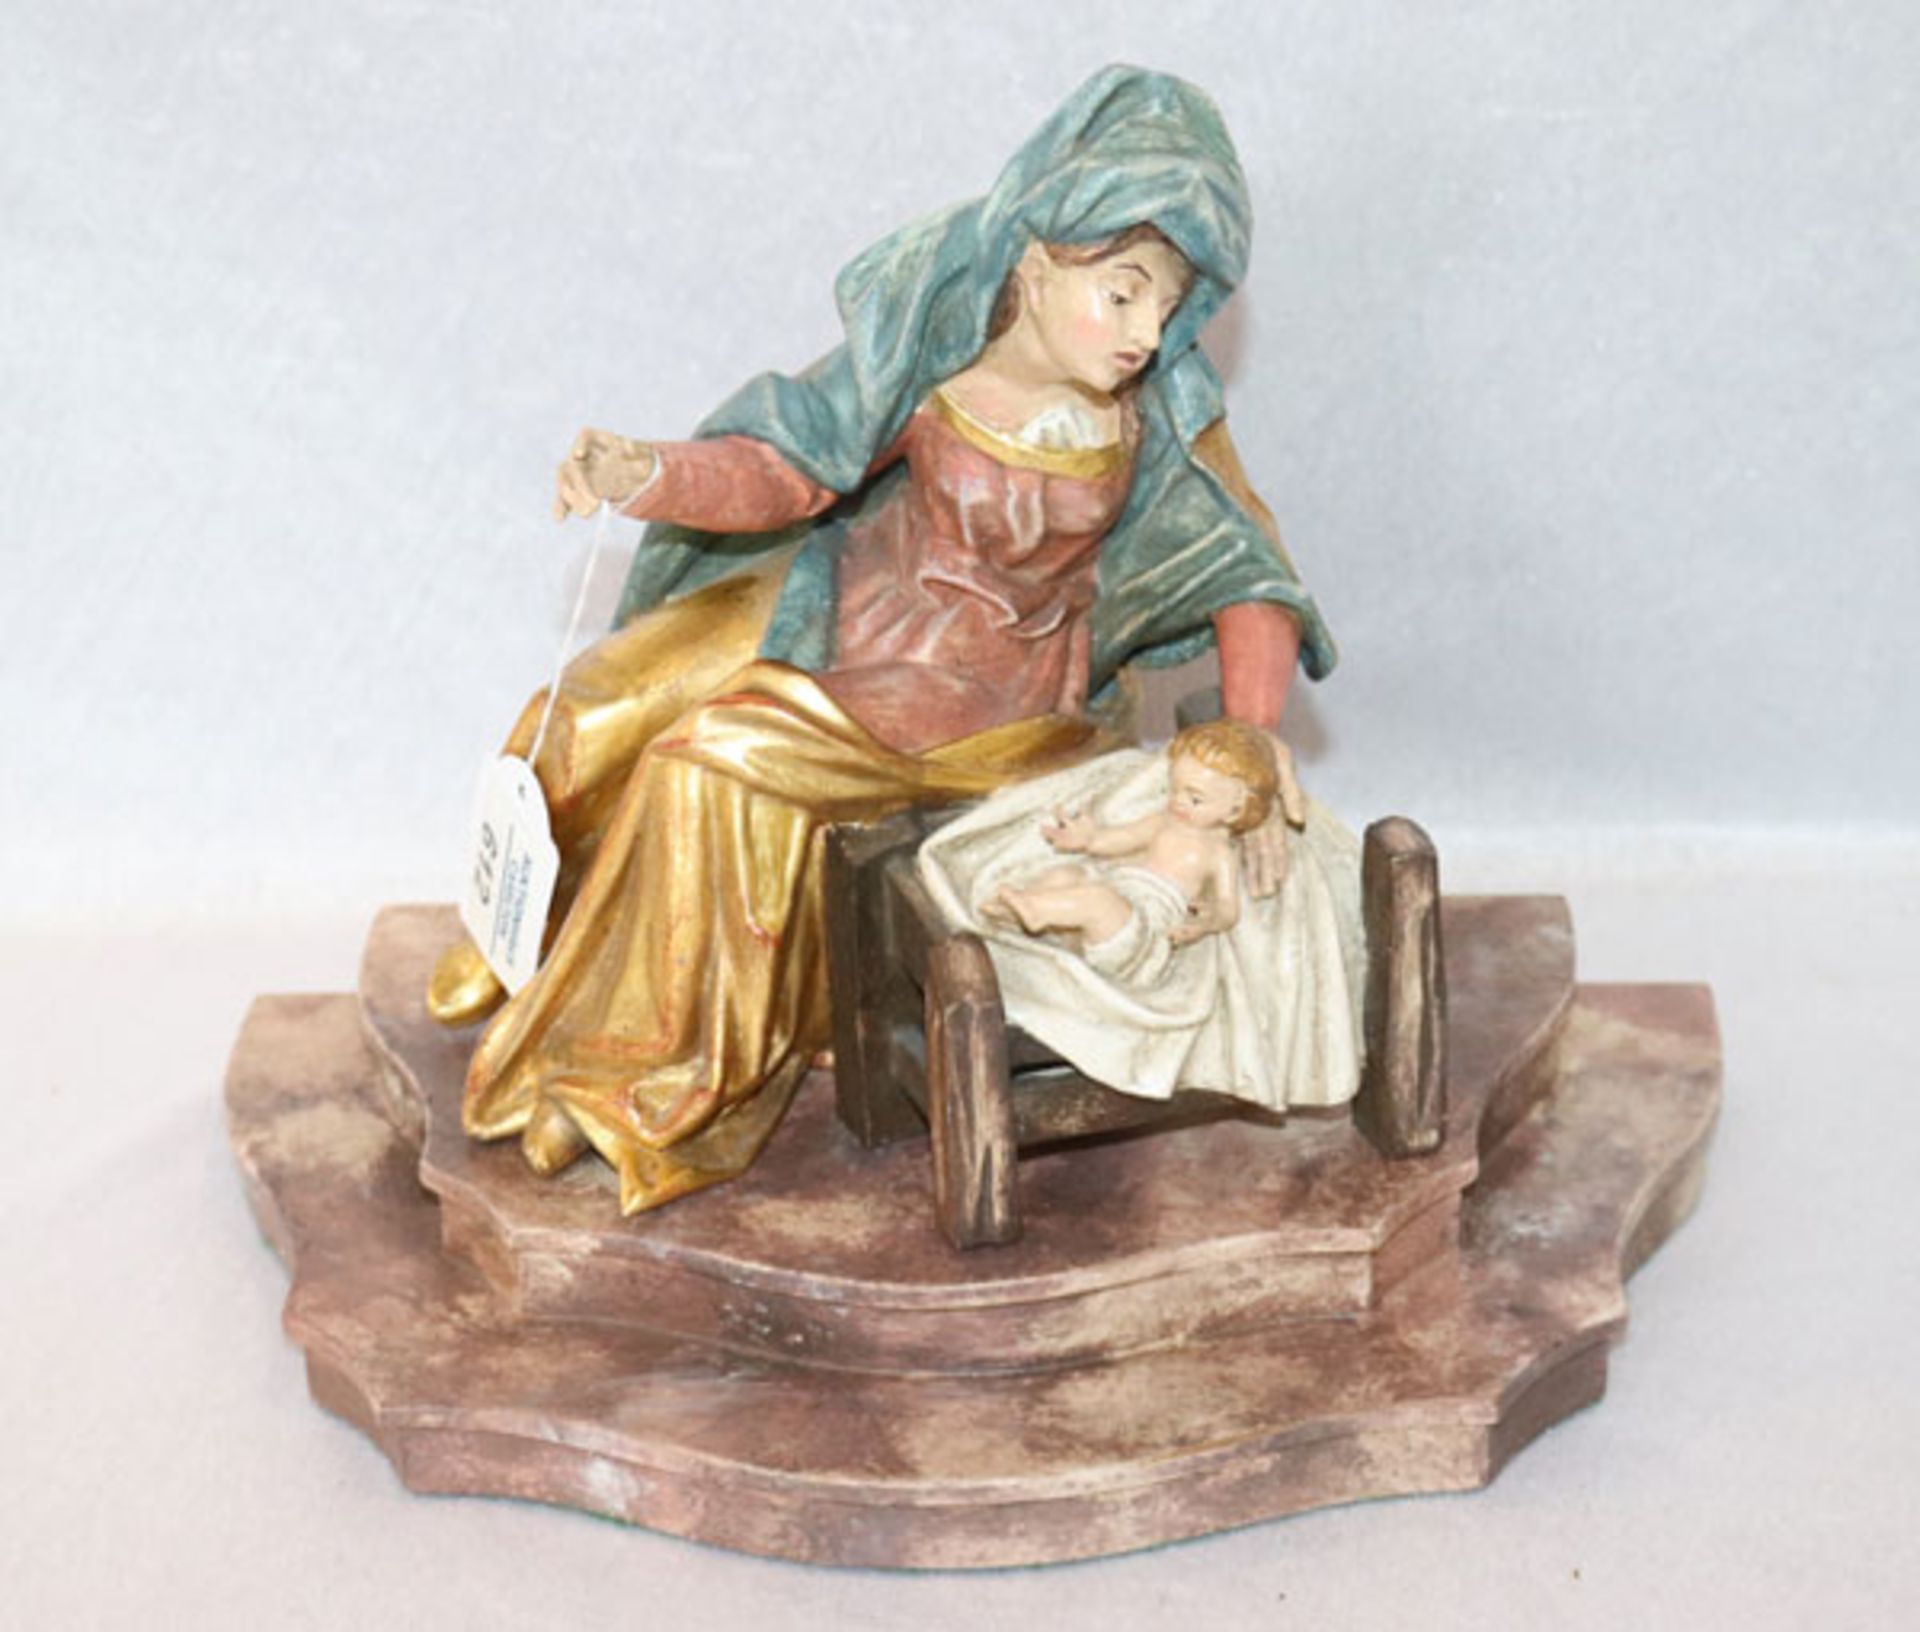 Holz Figurenskulptur 'Maria mit Kind', H 20 cm, B 23 cm, T 16 cm, schön geschnitzt und farbig